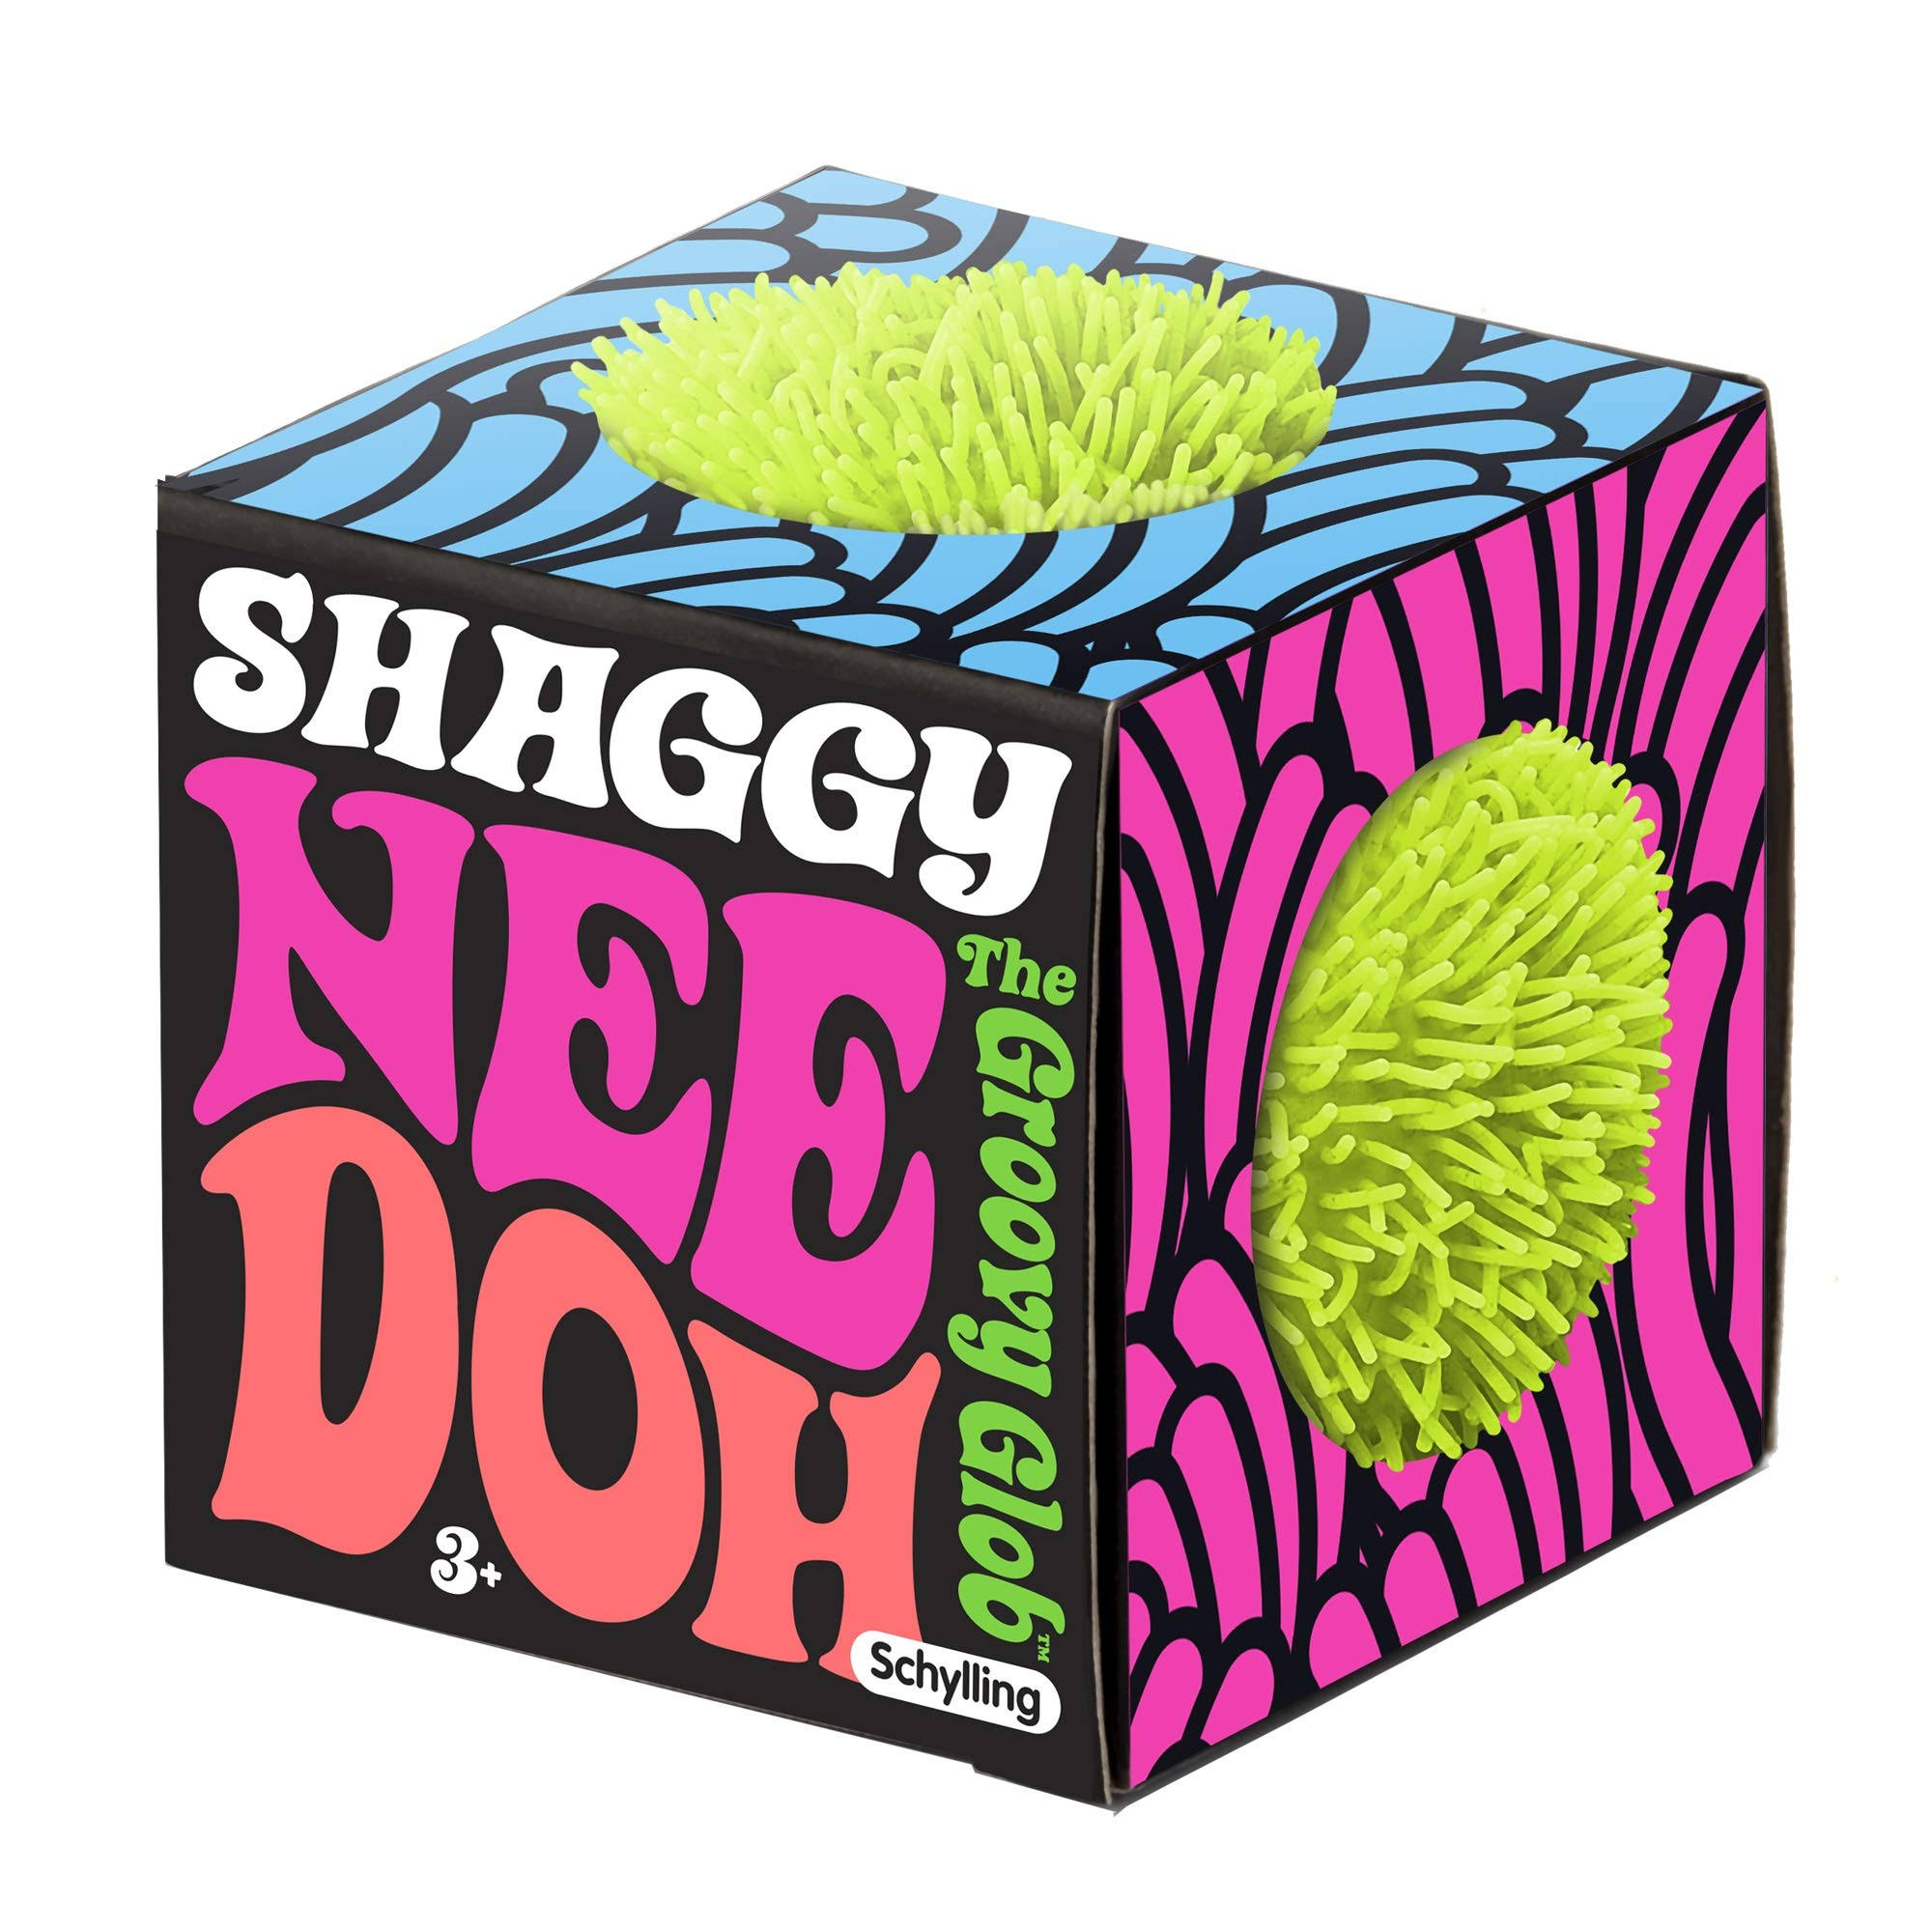 Shaggy Nee-Doh